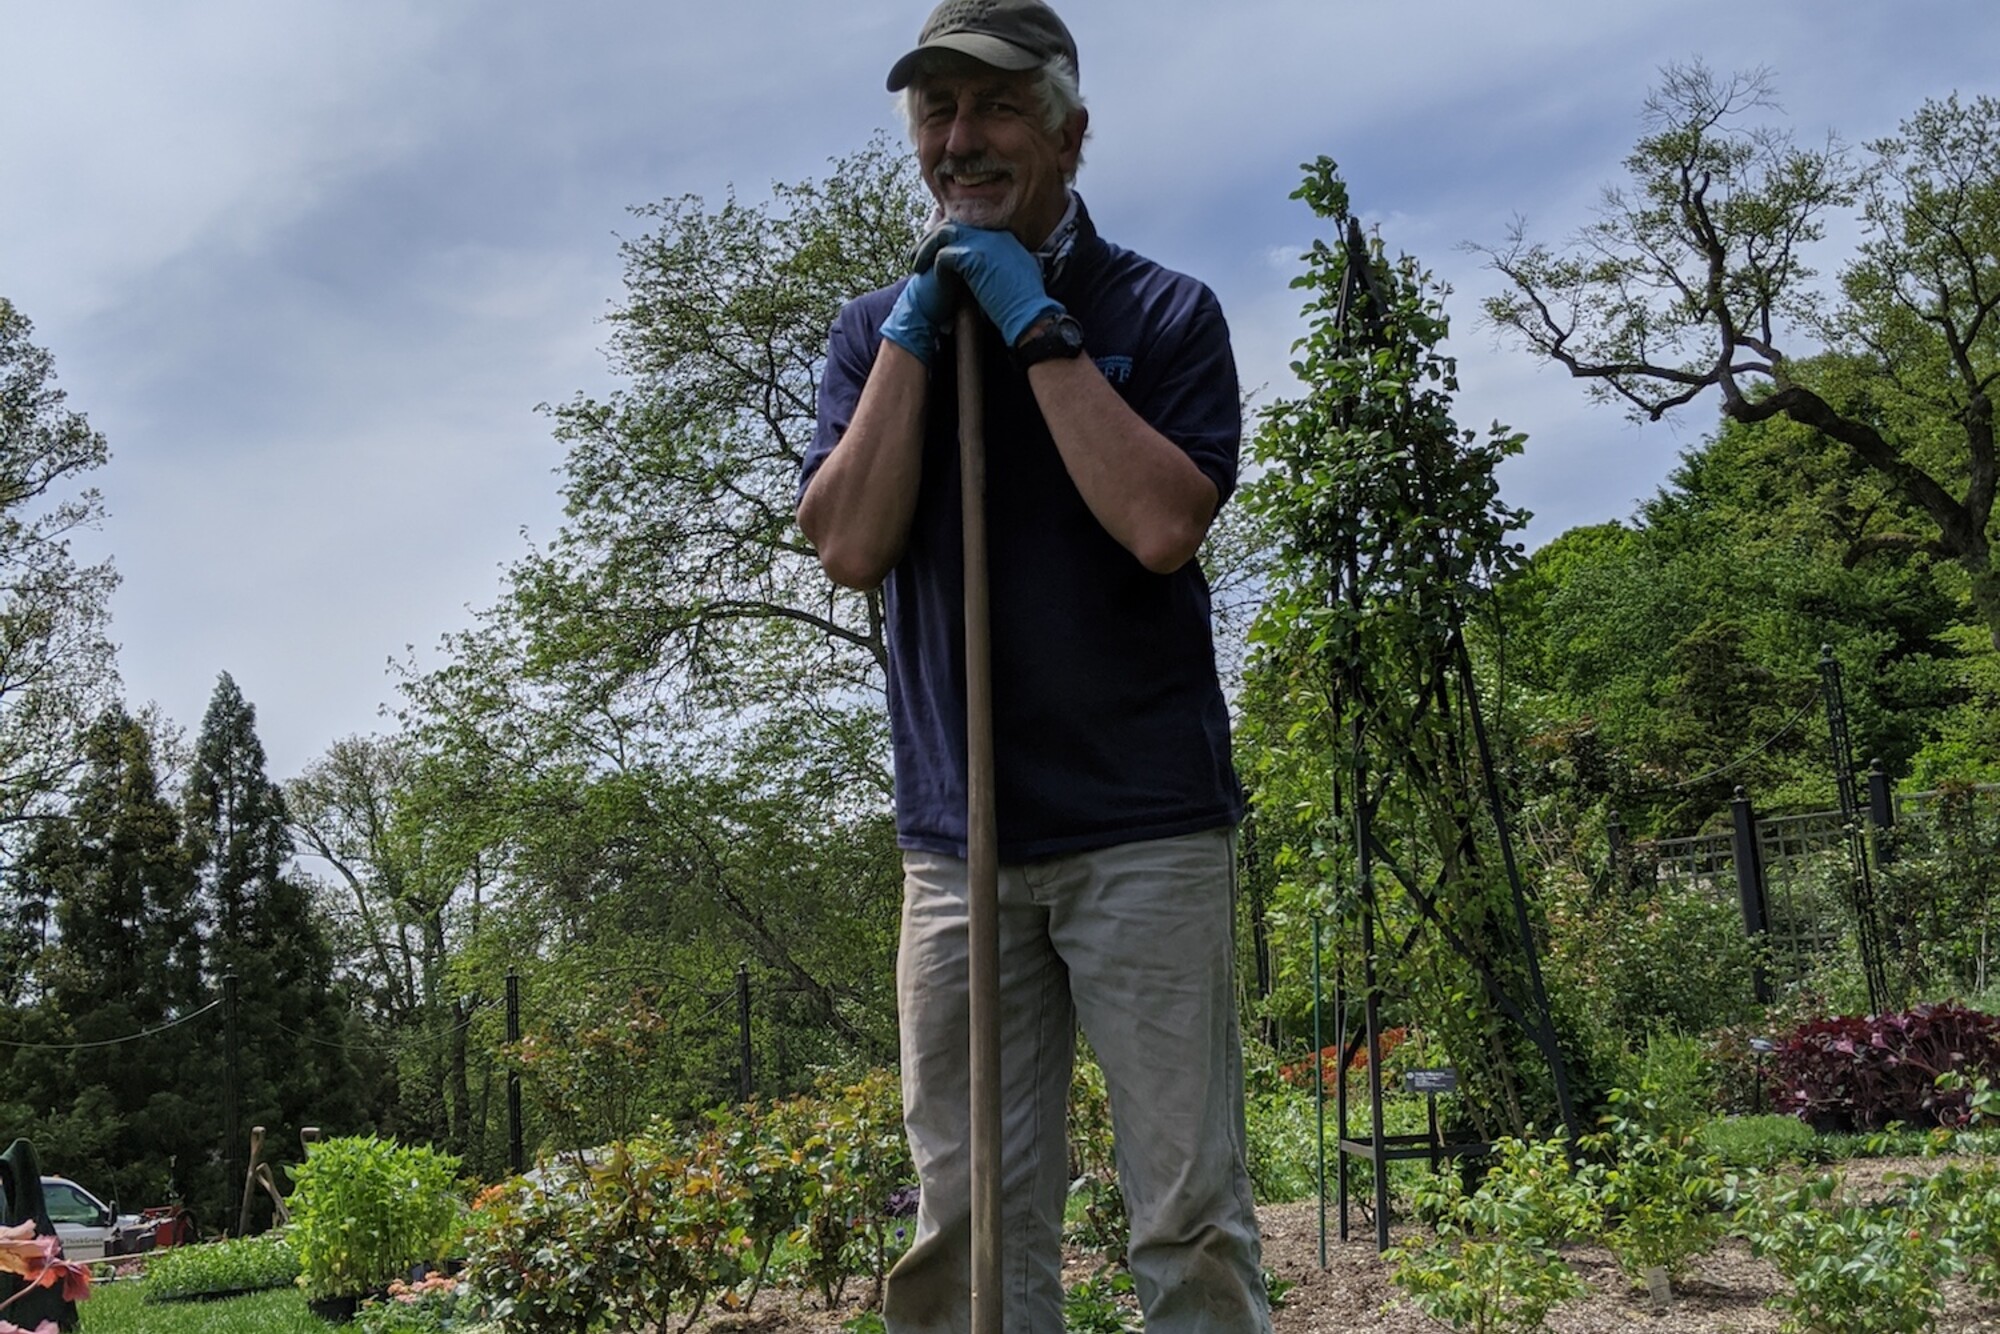 Gardener leans against shovel and smiles